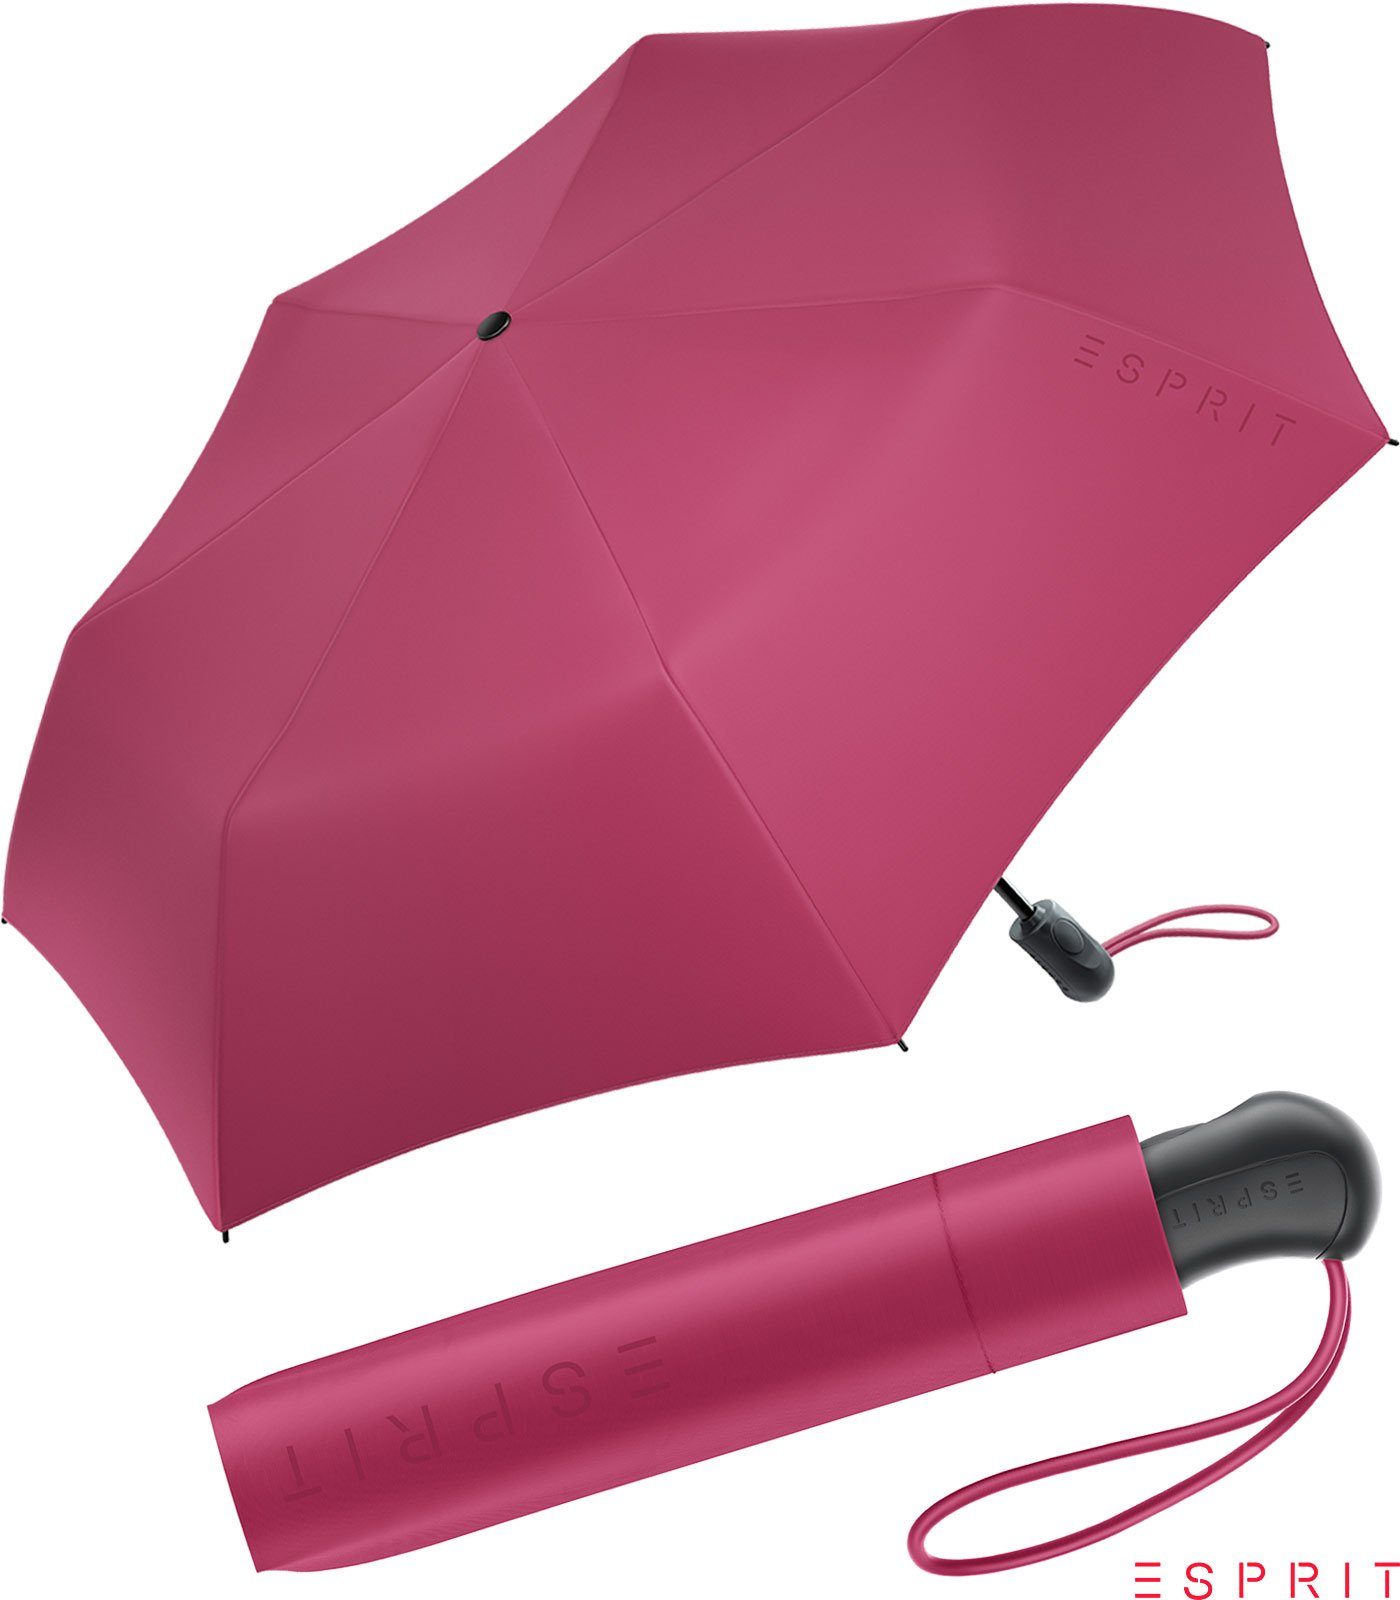 Esprit Taschenregenschirm Damen Easymatic Light Auf-Zu Automatik HW 2022 - vivacious pink, stabil, praktisch, in den neuen Trendfarben